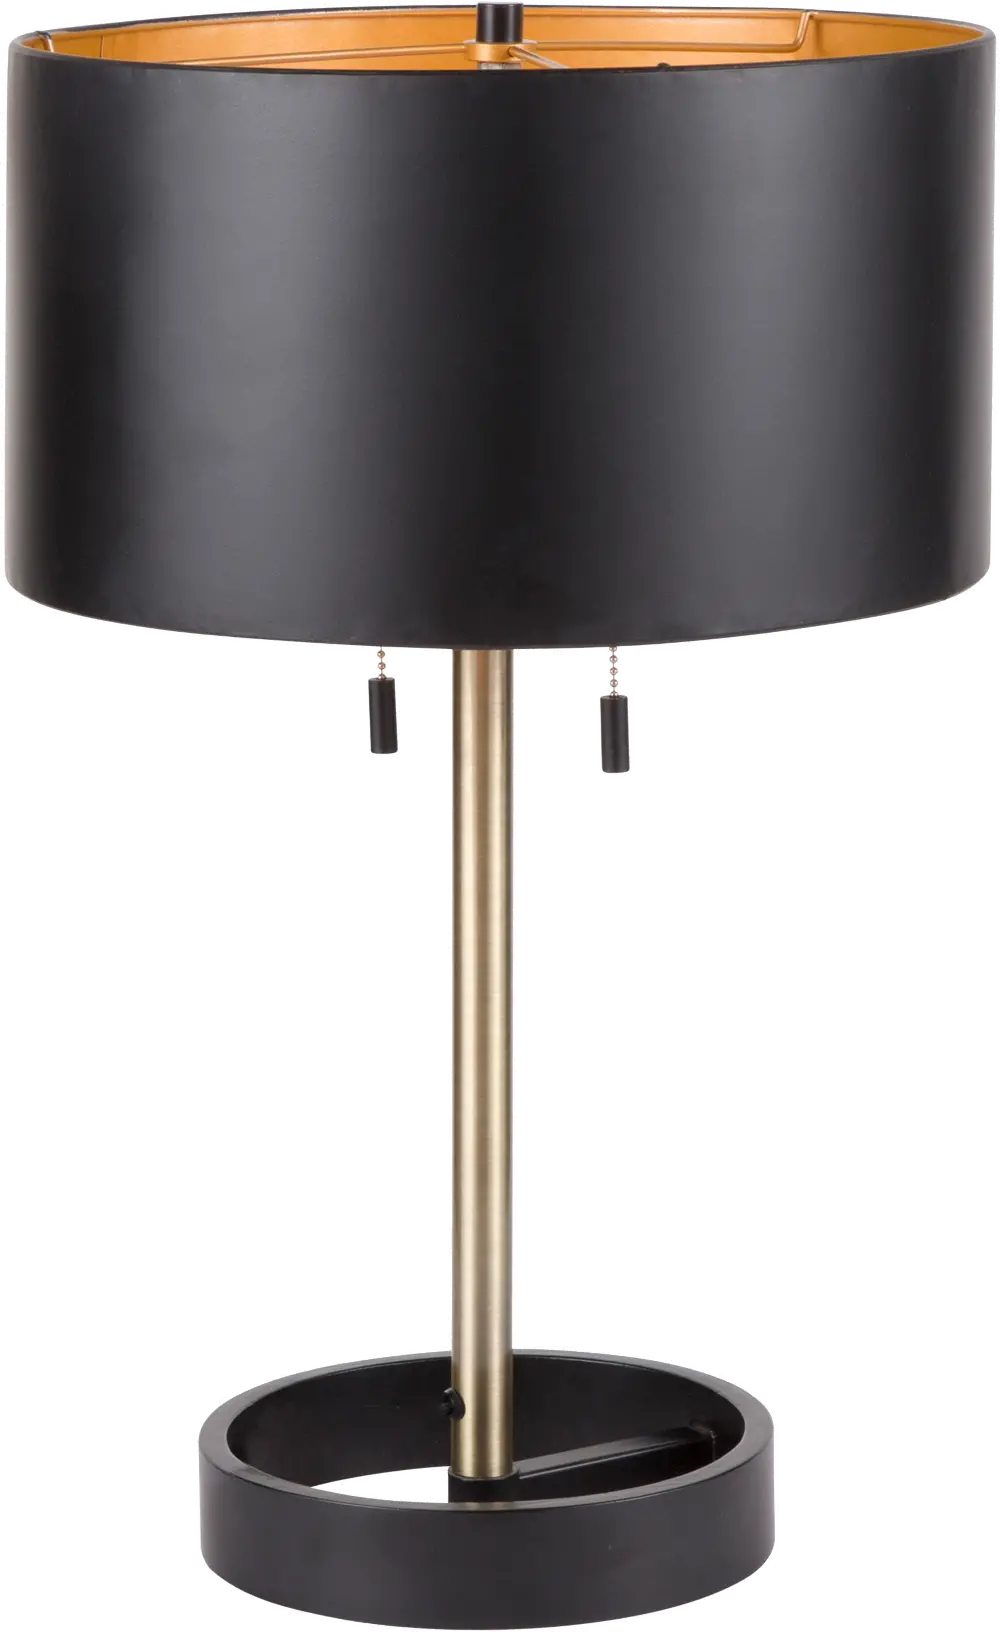 L-HLTNTB-AU+BK Contemporary Black Table Lamp with Gold Accents - Hilton-1